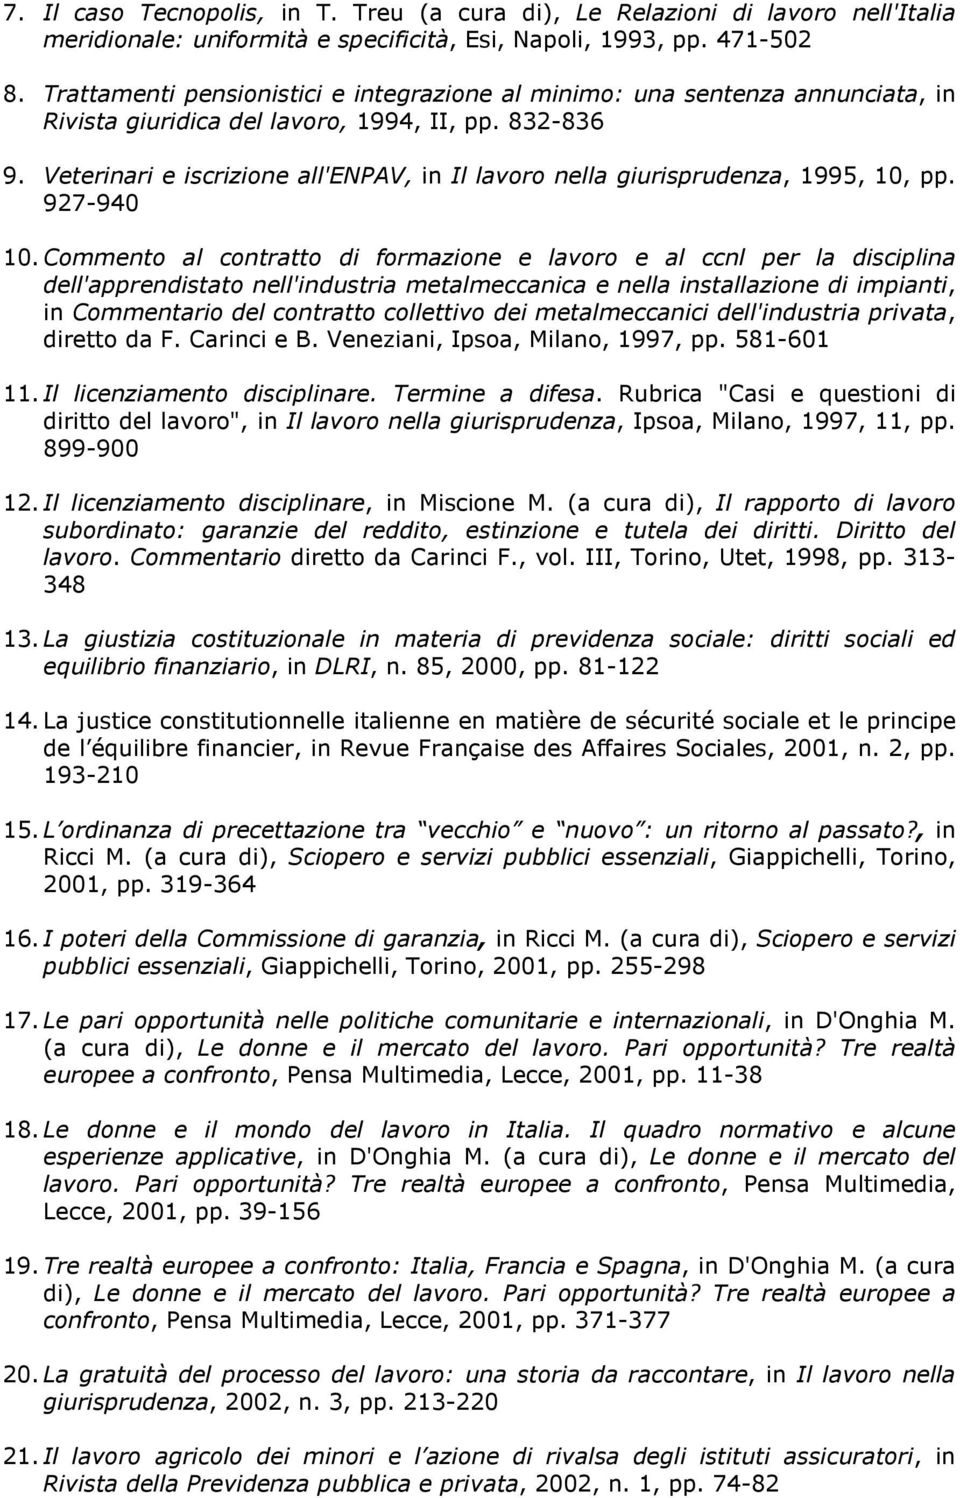 Veterinari e iscrizine all'enpav, in Il lavr nella giurisprudenza, 1995, 10, pp. 927-940 10.